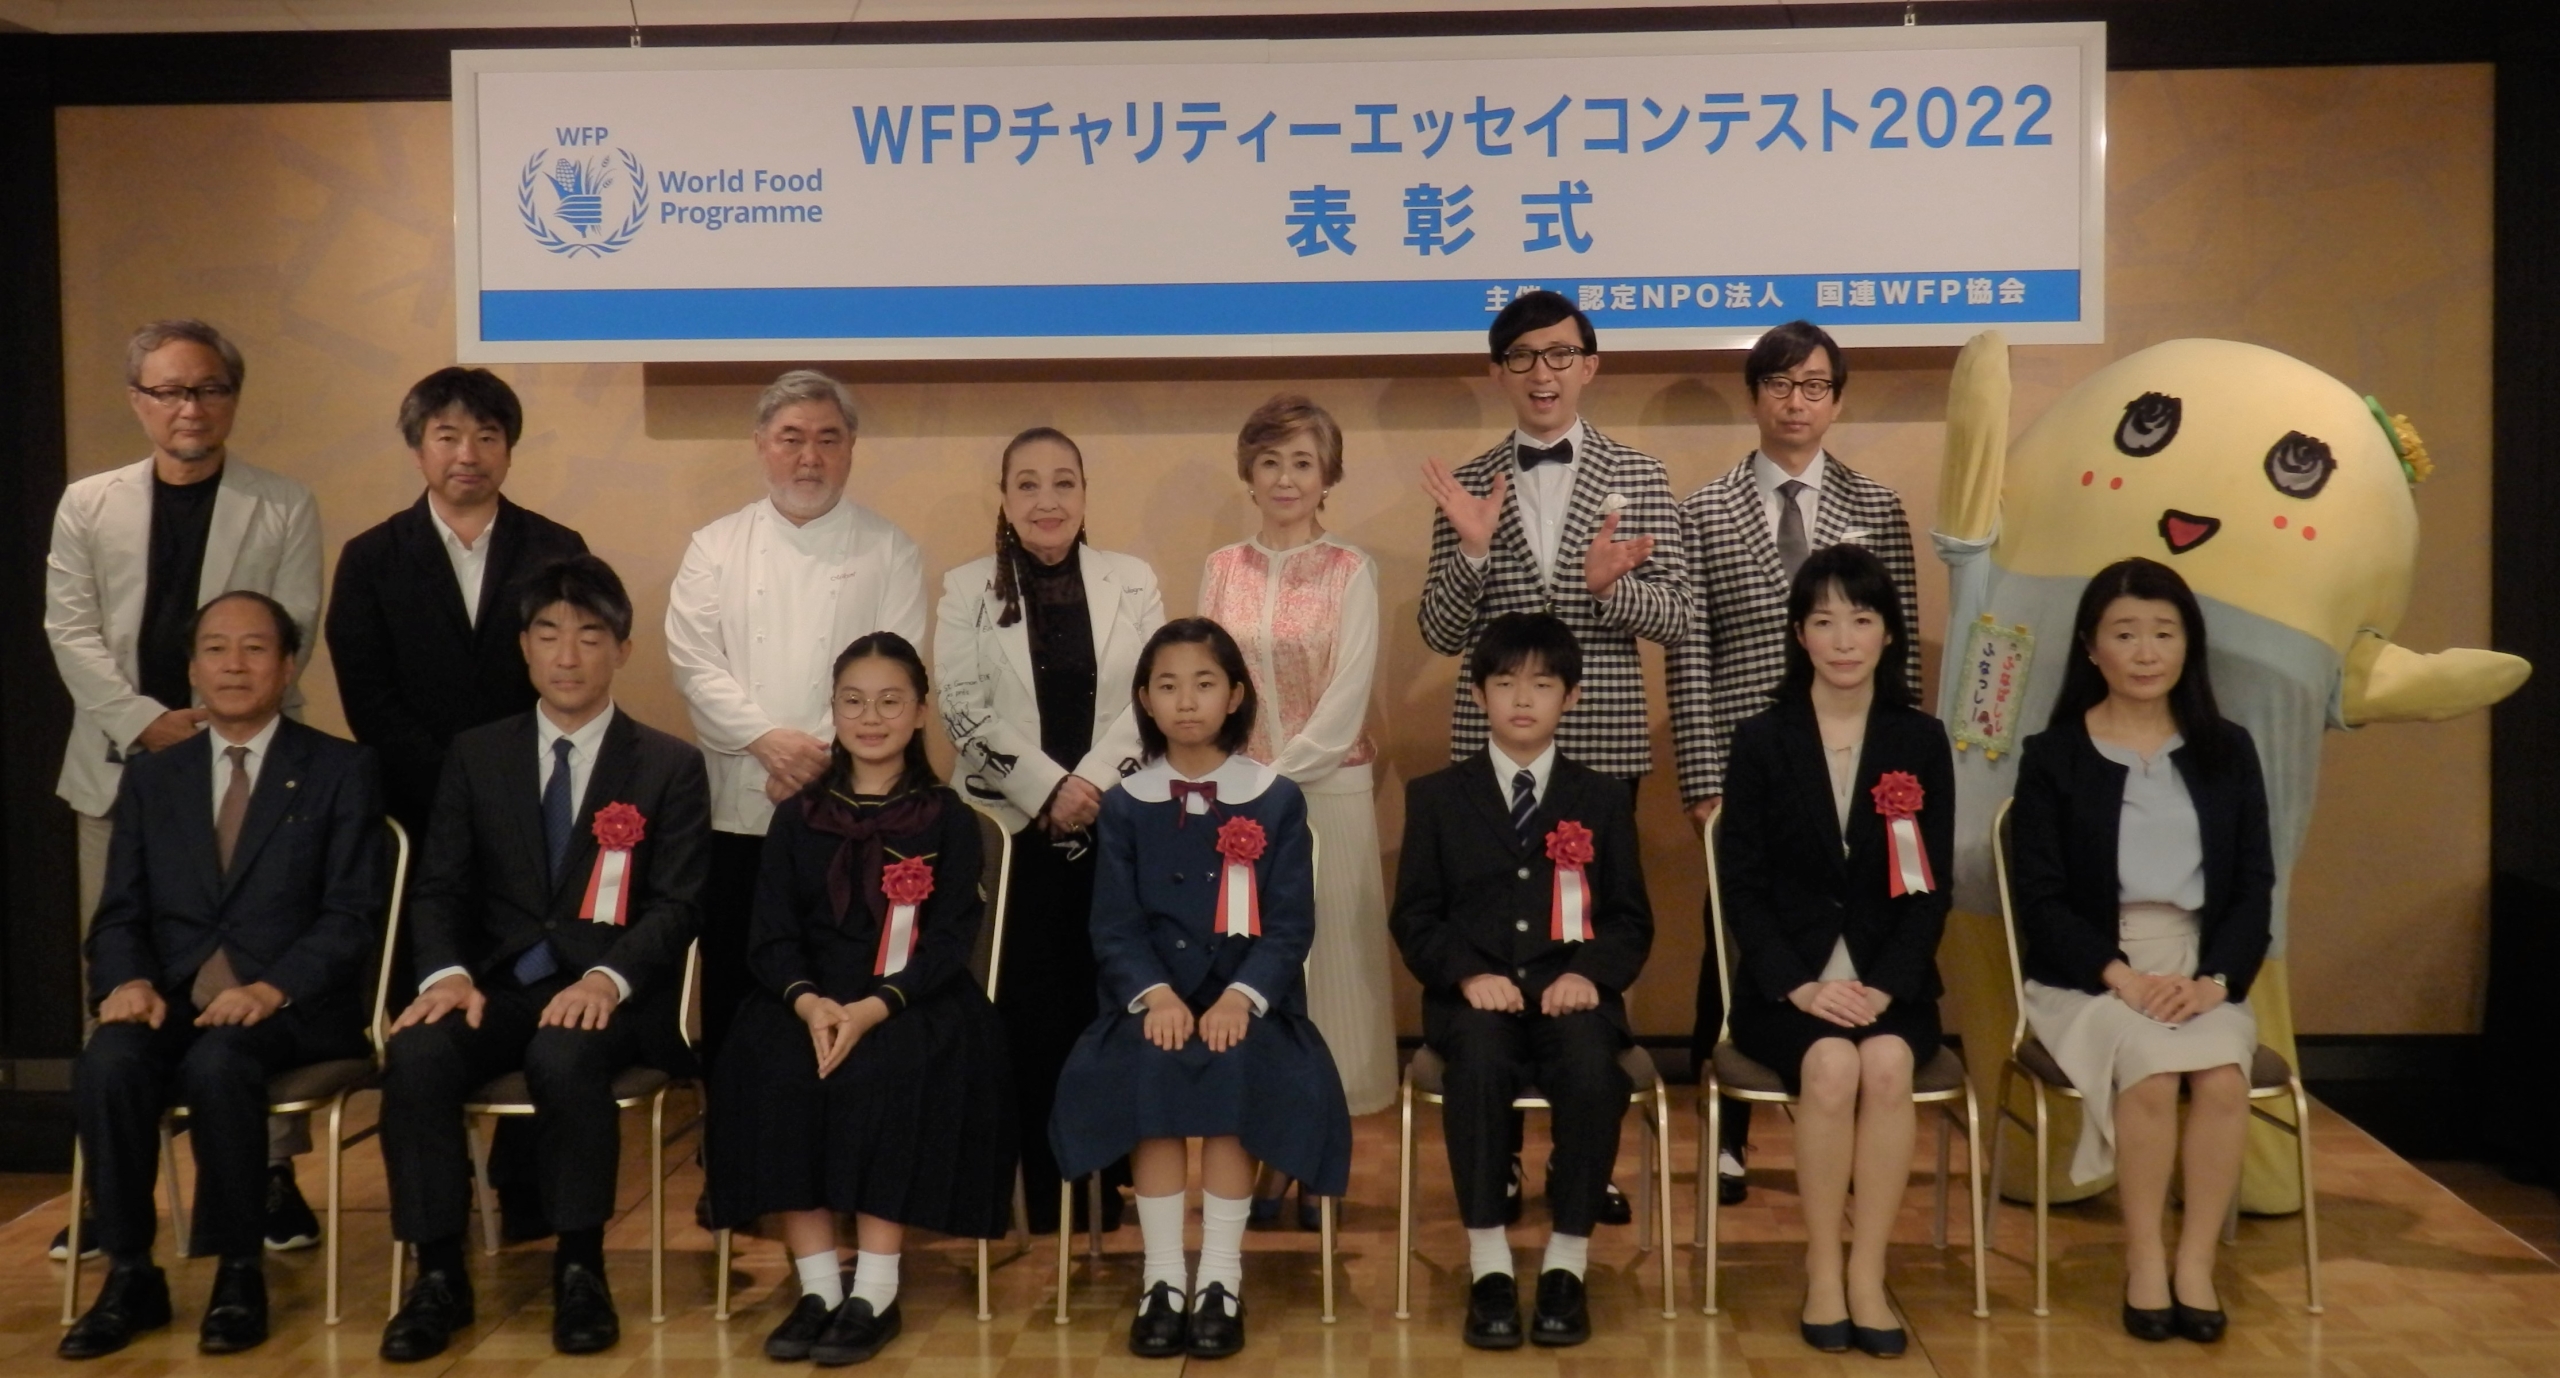 国連WFP協会「WFPチャリティーエッセイコンテスト2022」表彰式の様子